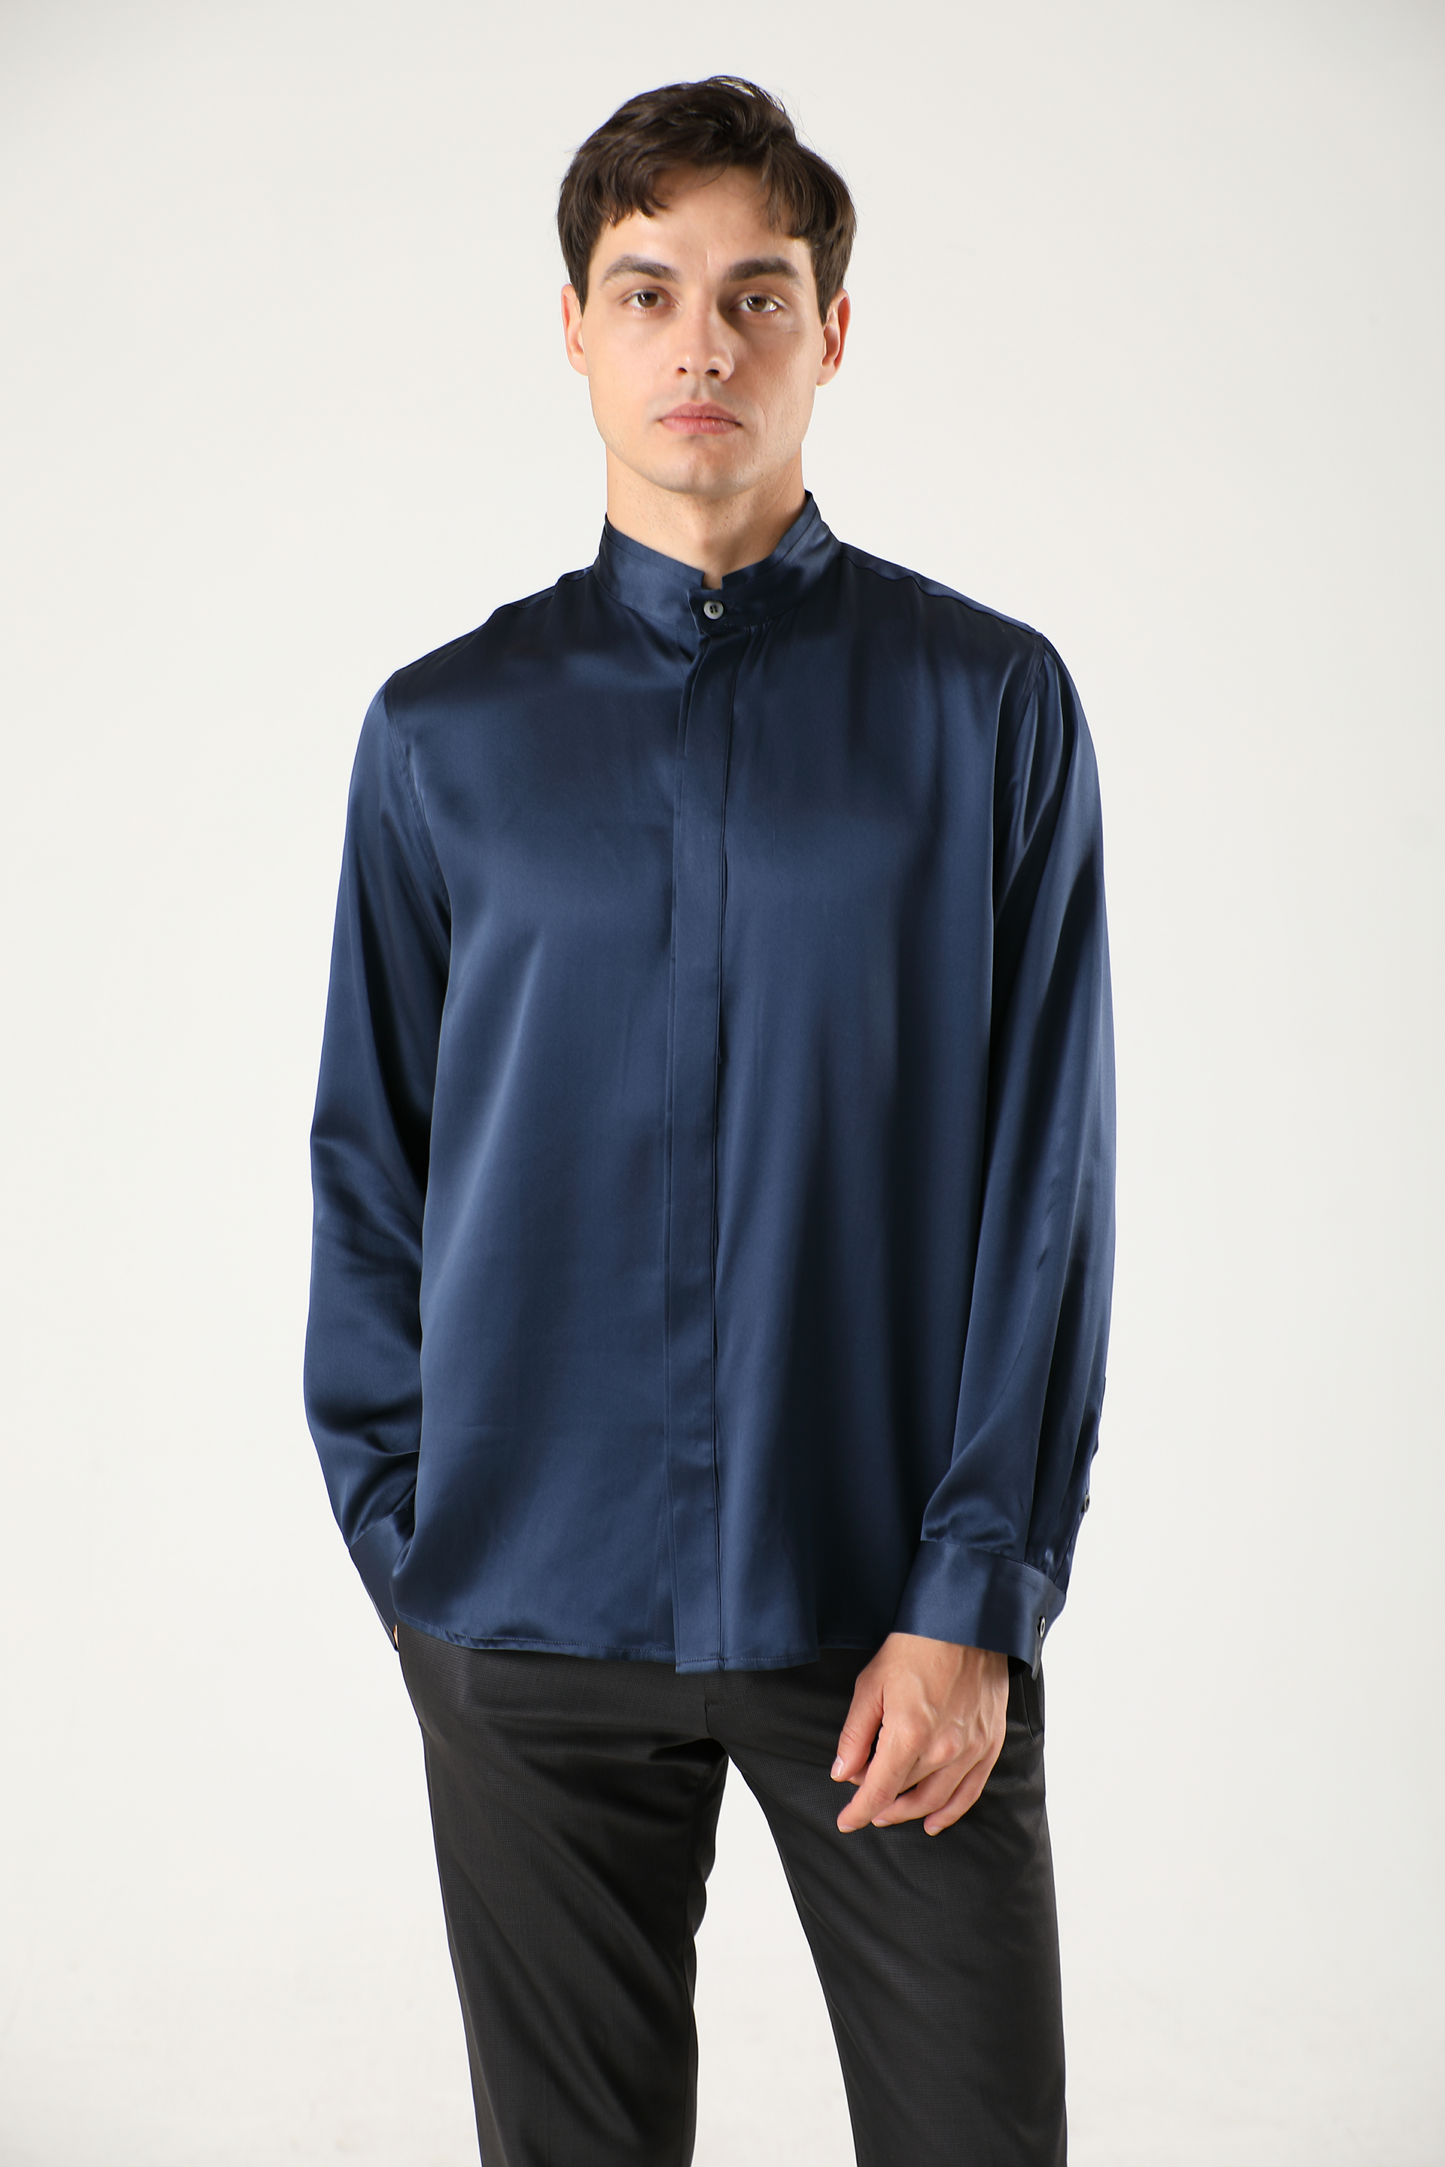 Men's silk shirt with mandarin collar